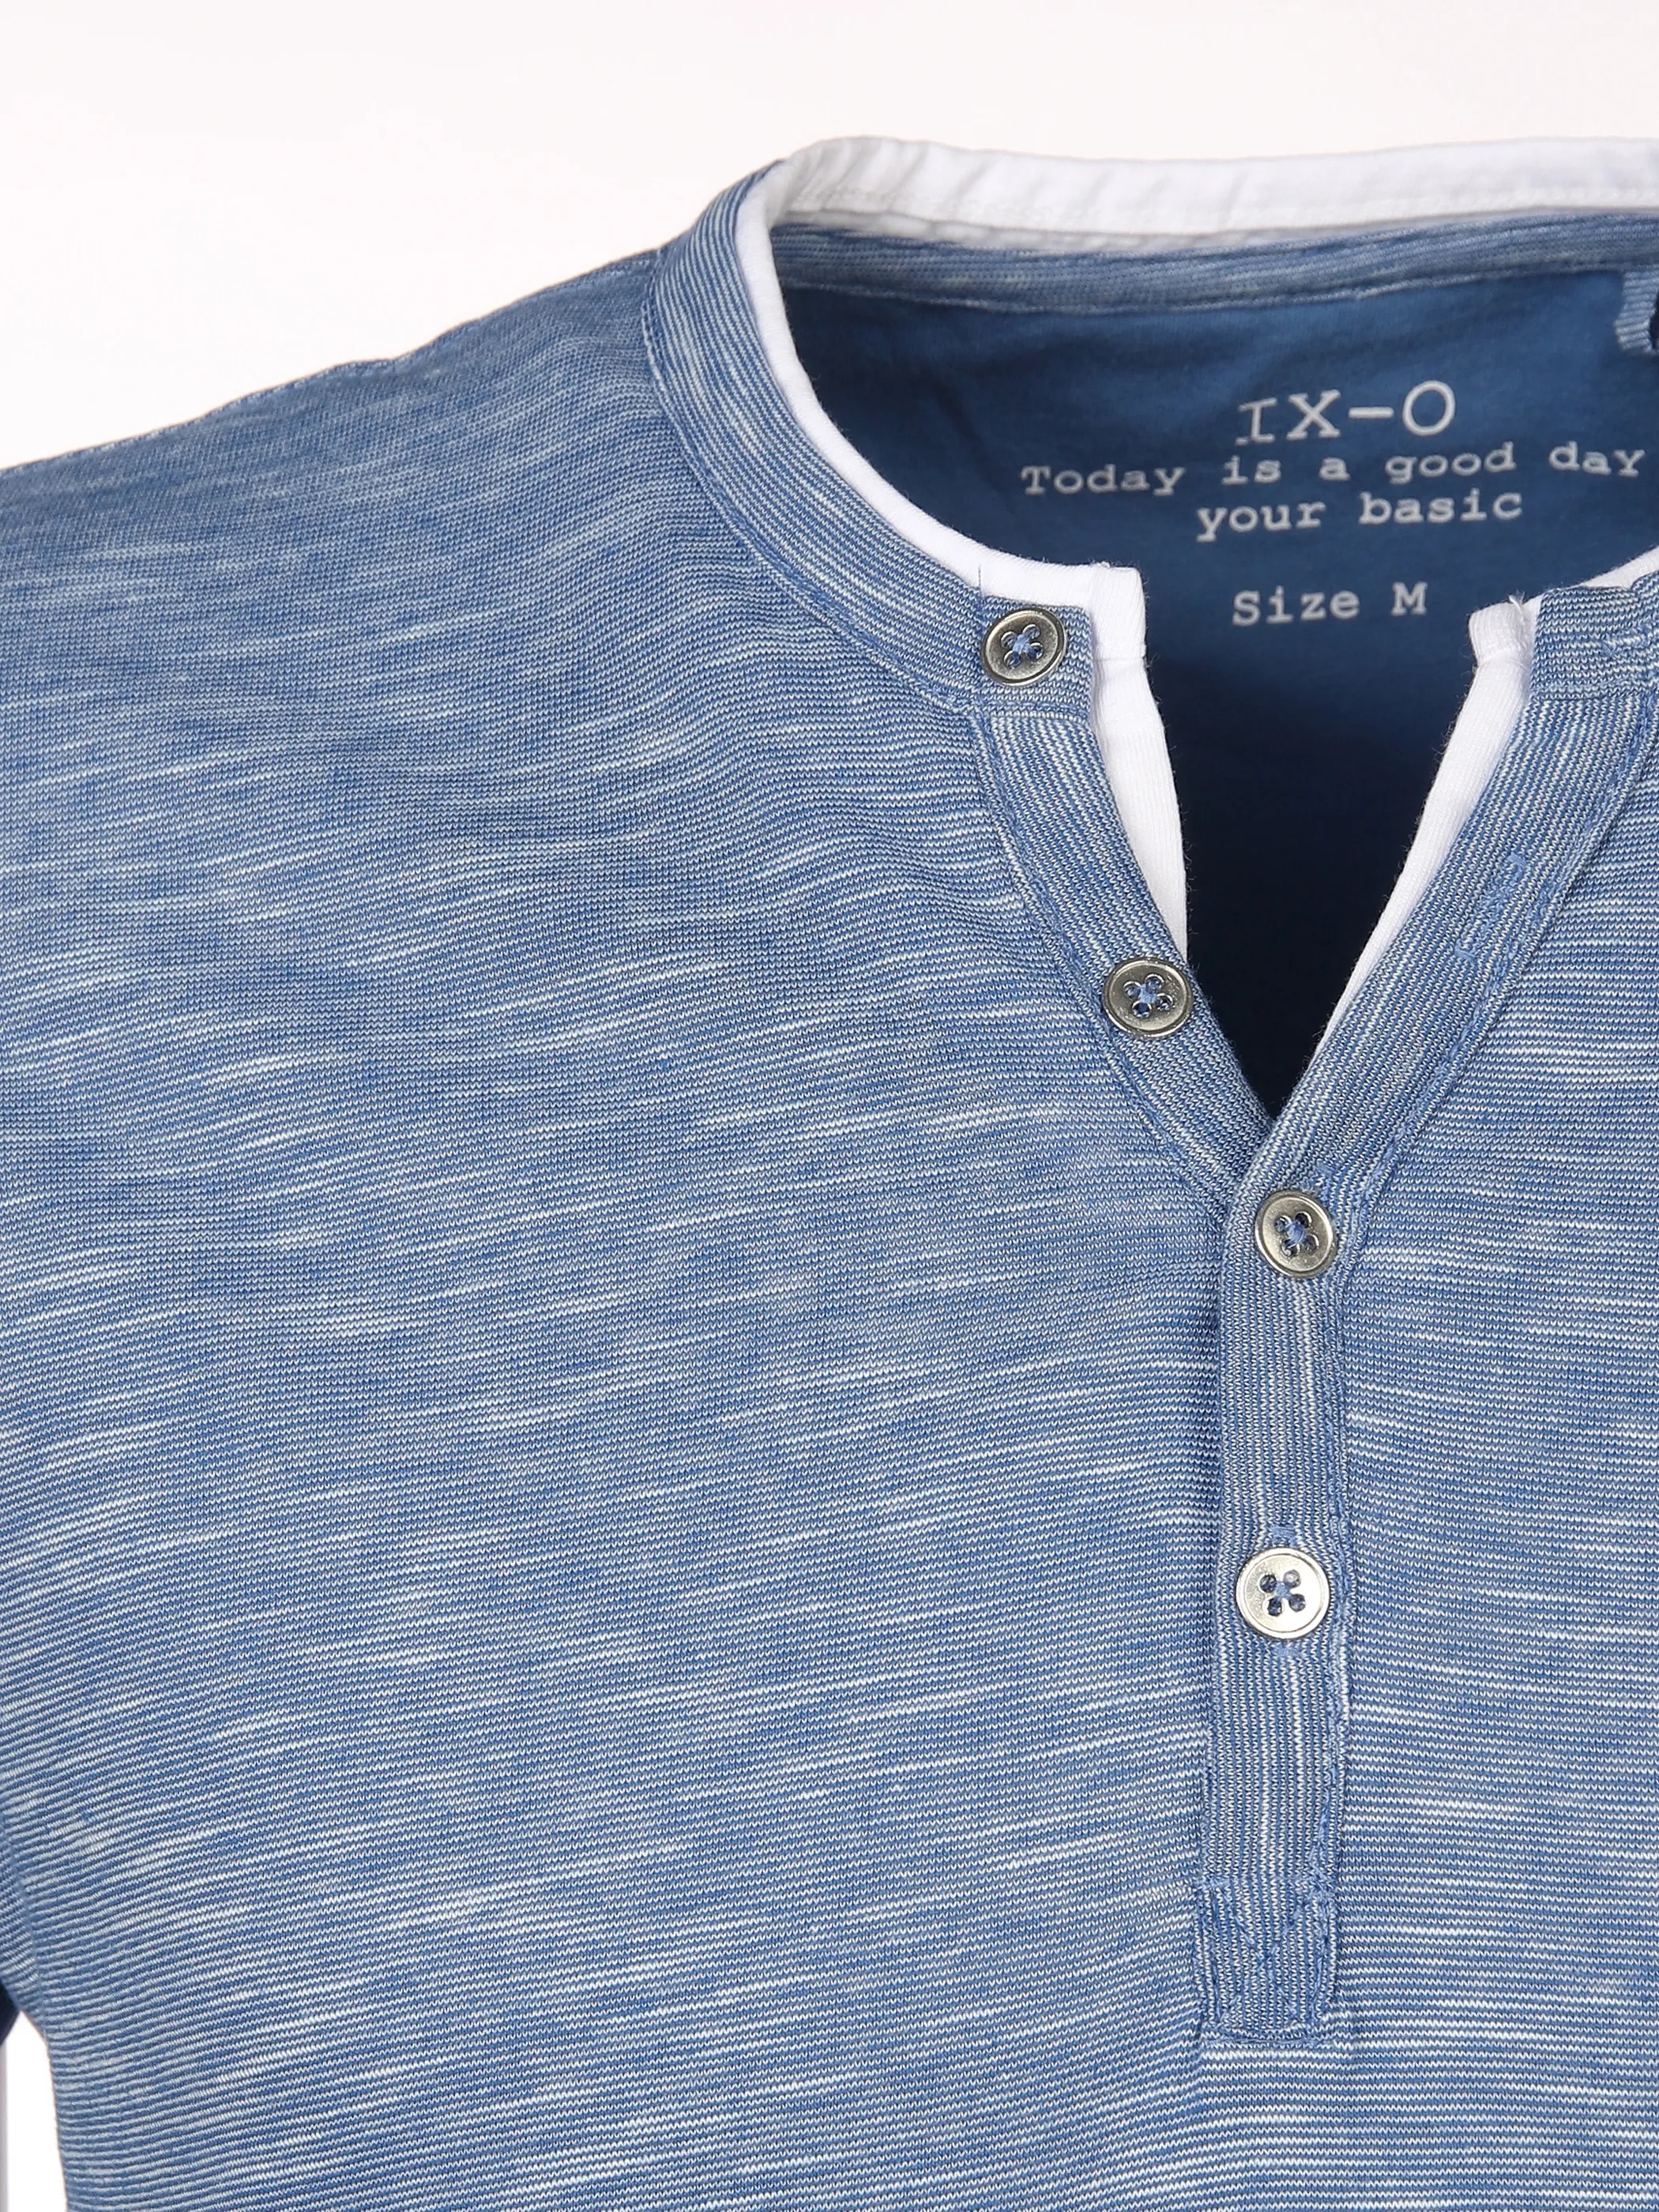 IX-O YF-He-T-Shirt, Serafino Blau 873742 MID BLUE 3